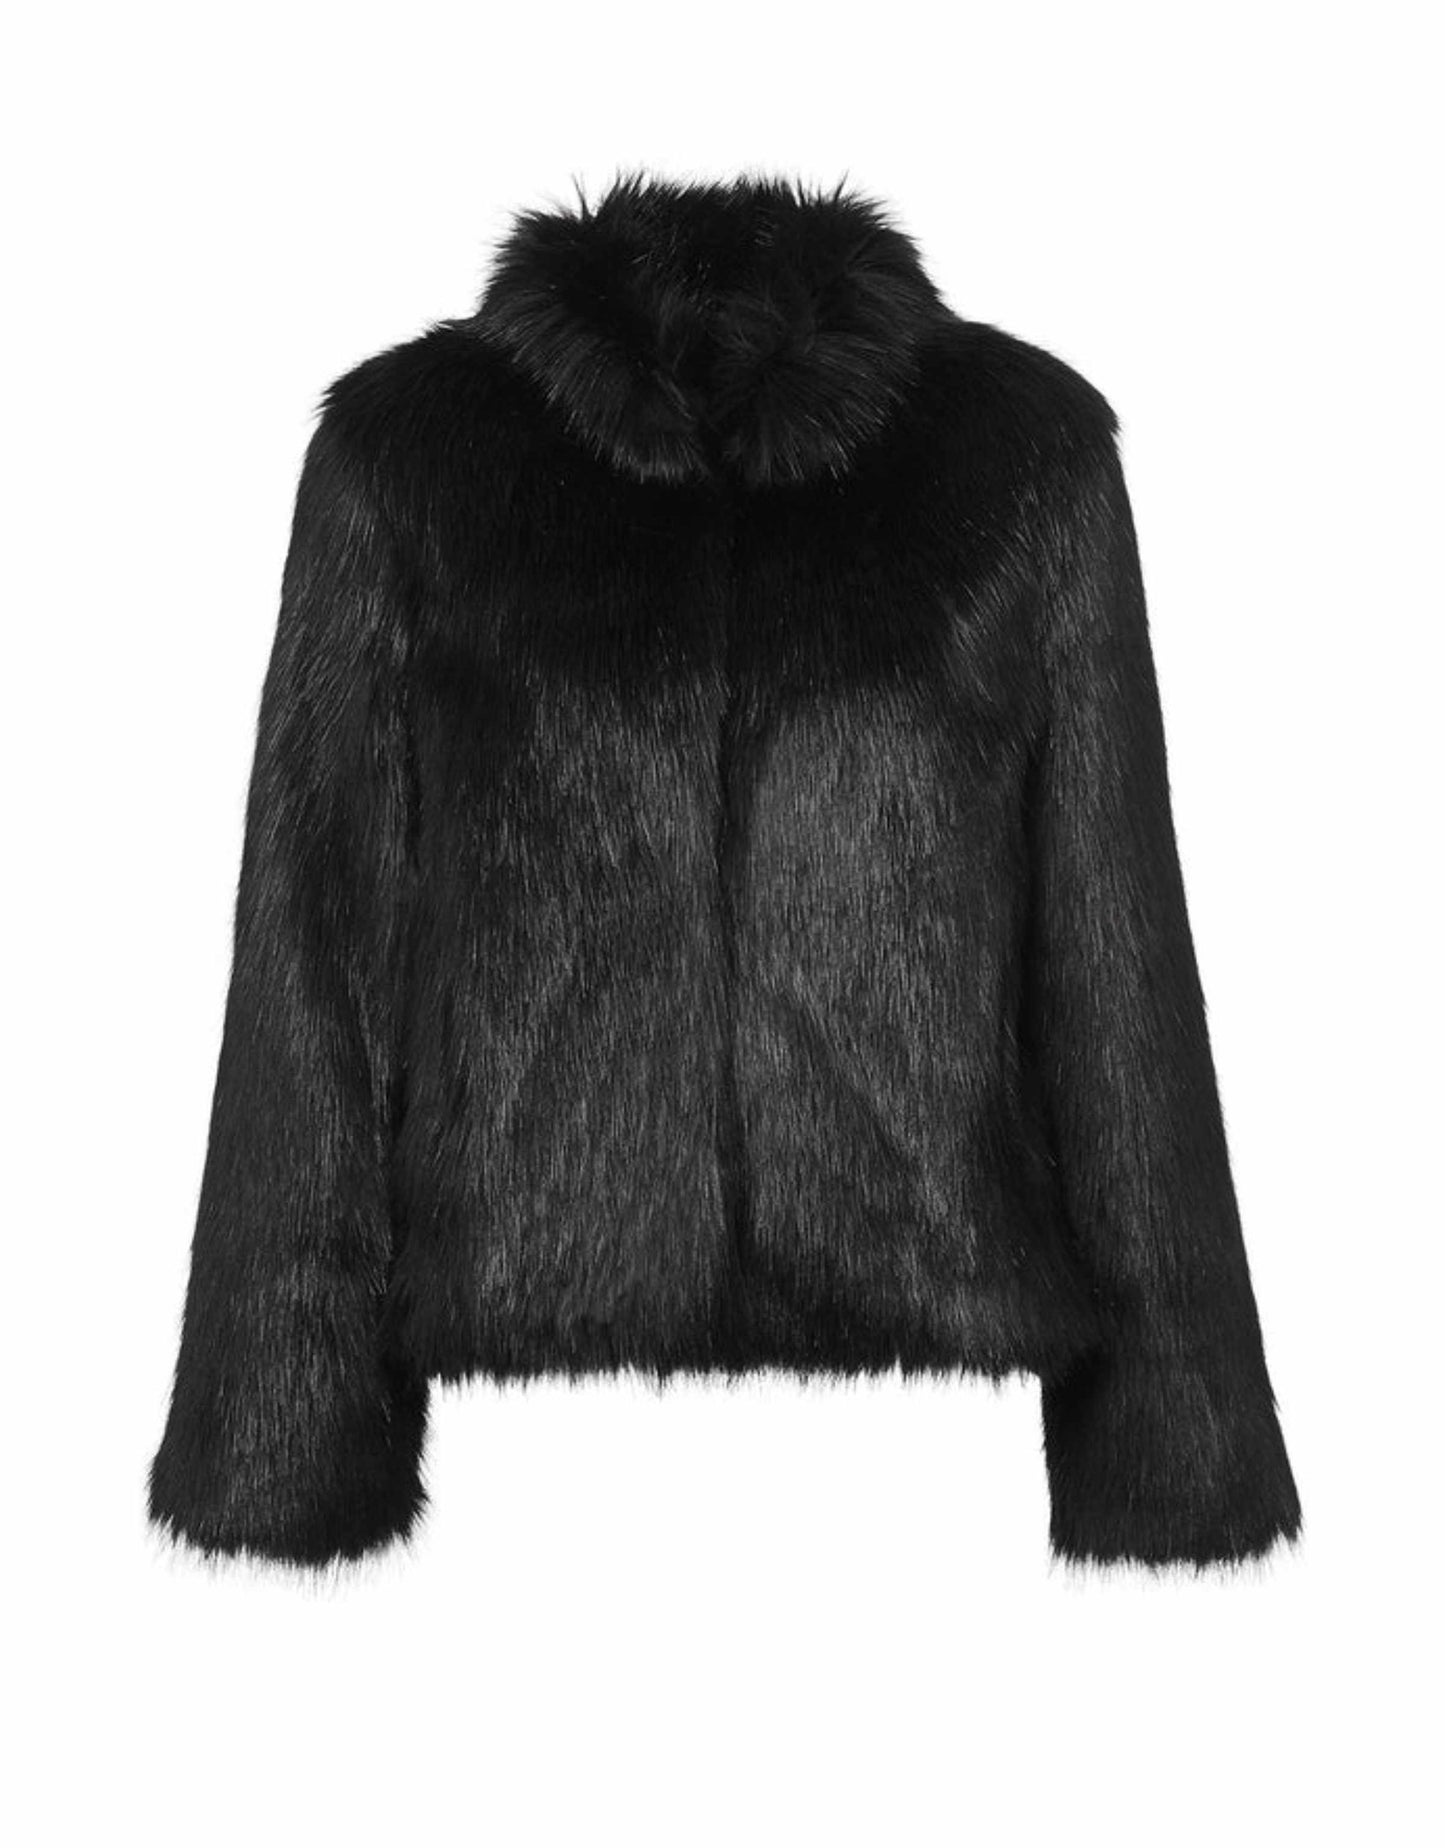 Unreal Fur - Fur Delish, Black